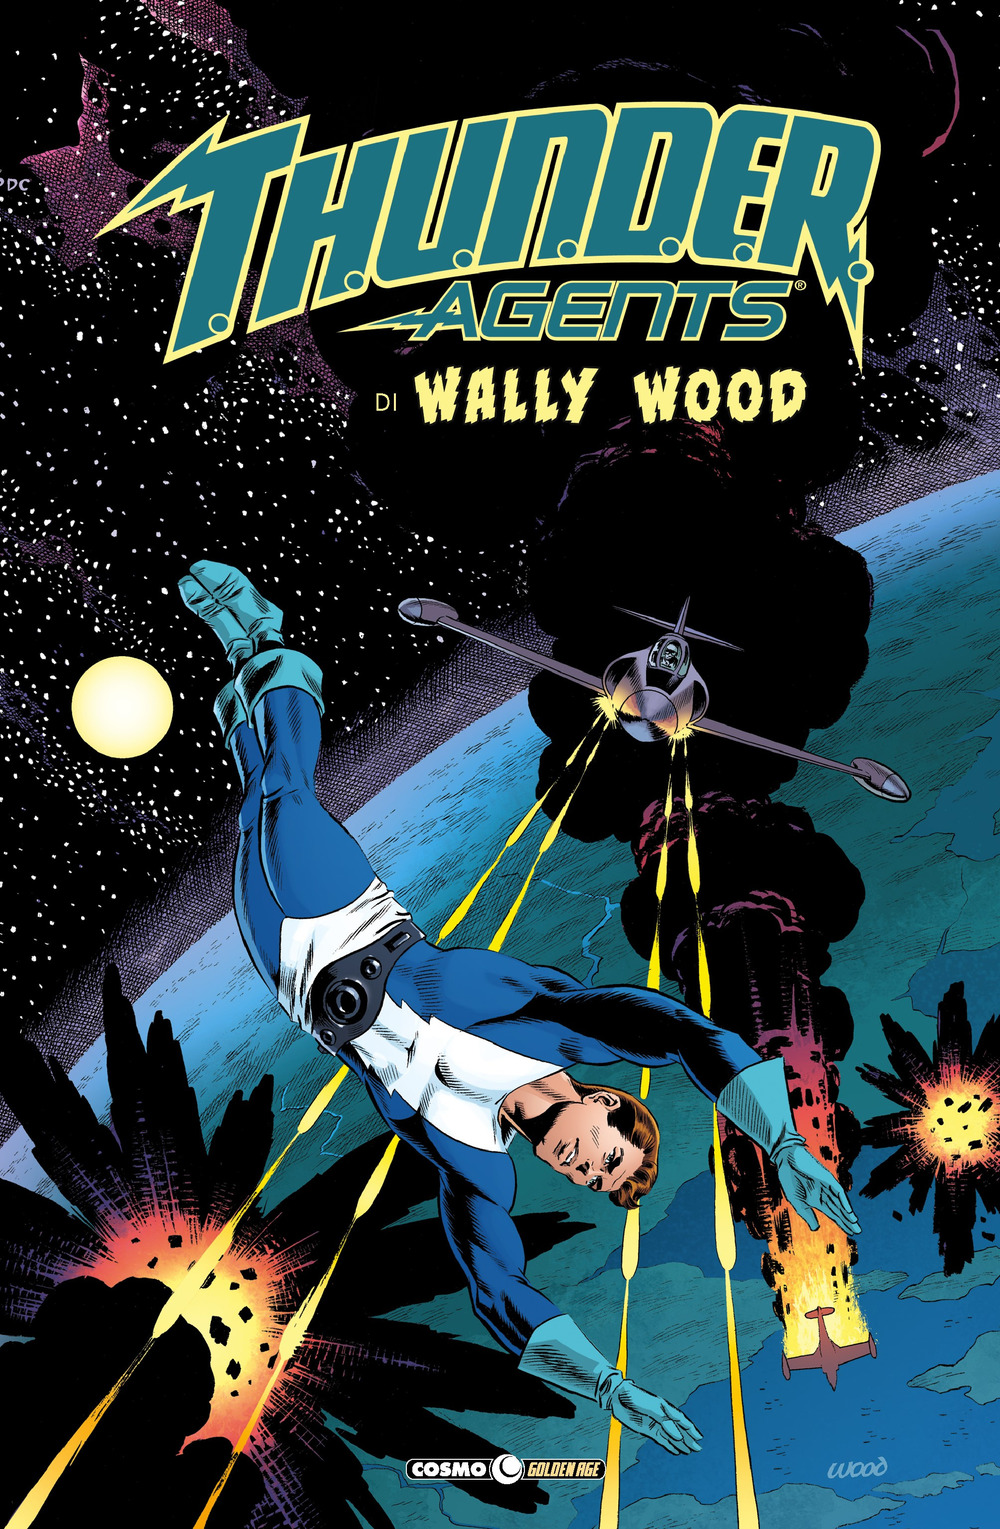 Libri Wally Wood - T.H.U.N.D.E.R. Agents. The Best Of Wally Wood Vol 01 NUOVO SIGILLATO, EDIZIONE DEL 10/10/2019 SUBITO DISPONIBILE